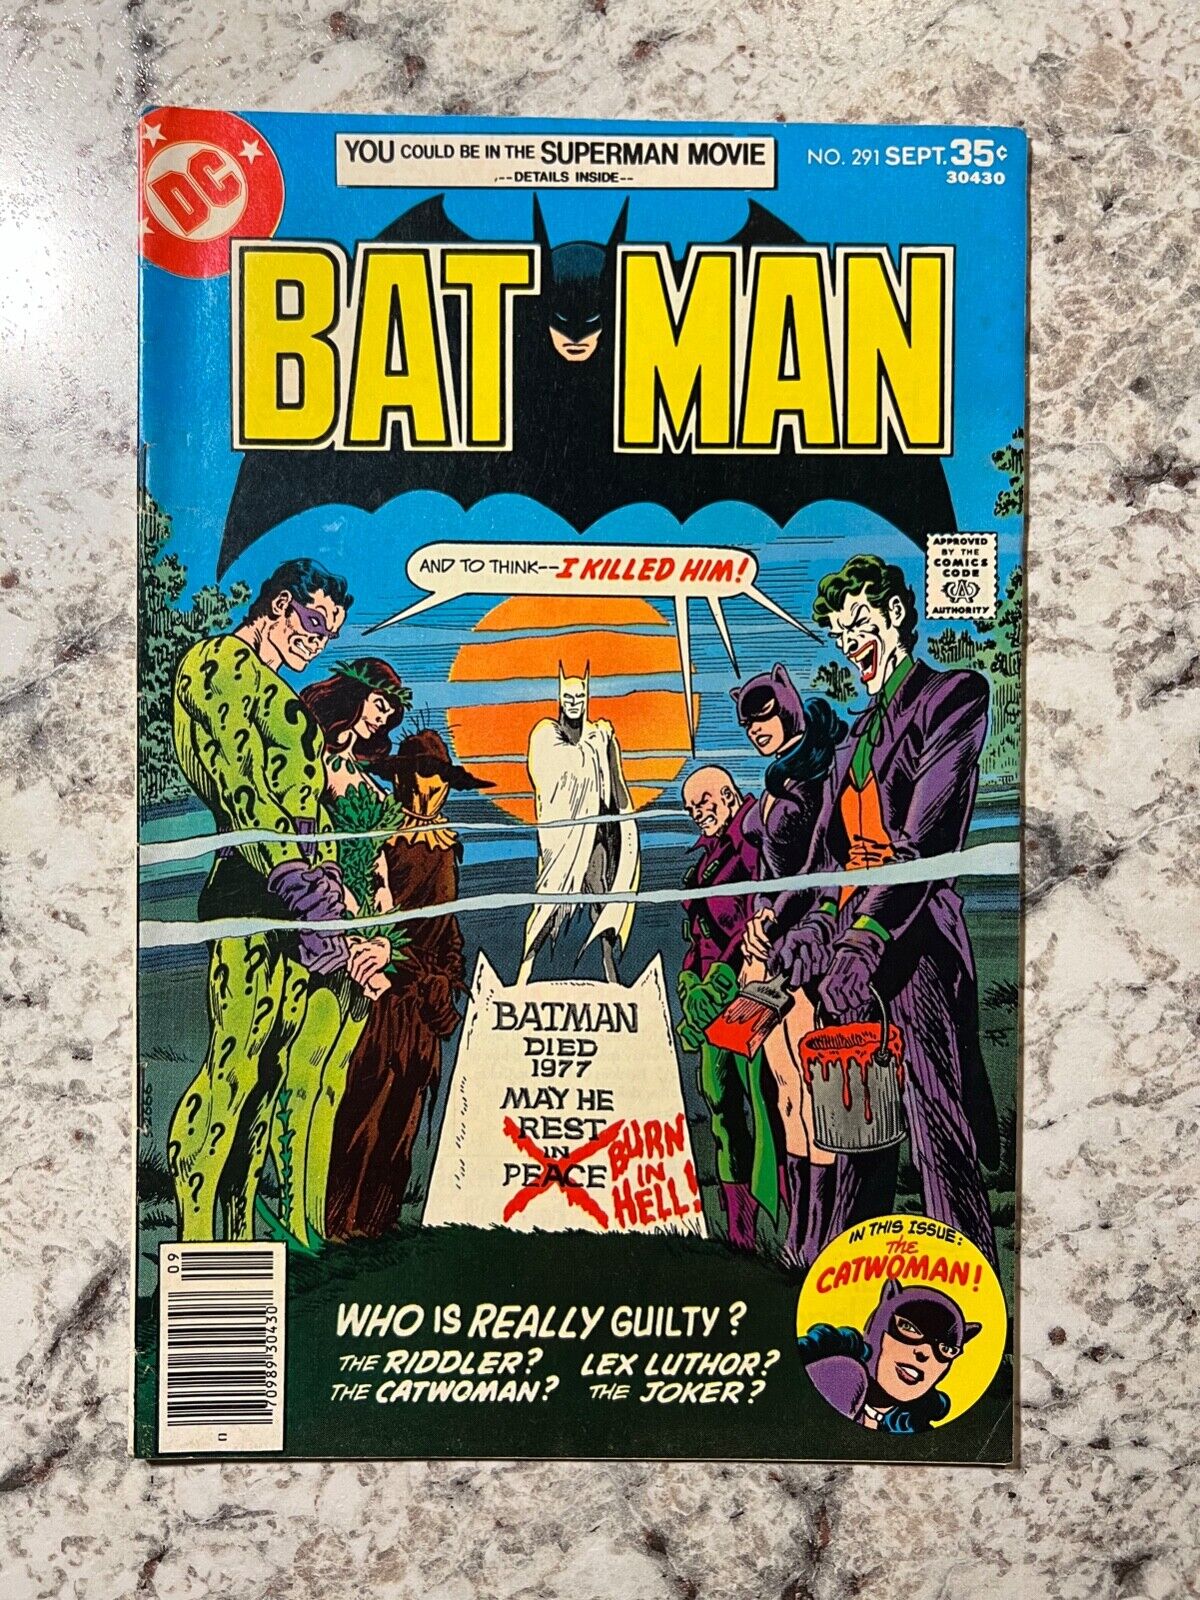 Batman #291 (DC Comics 1977) Joker and Rogue's Gallery cover